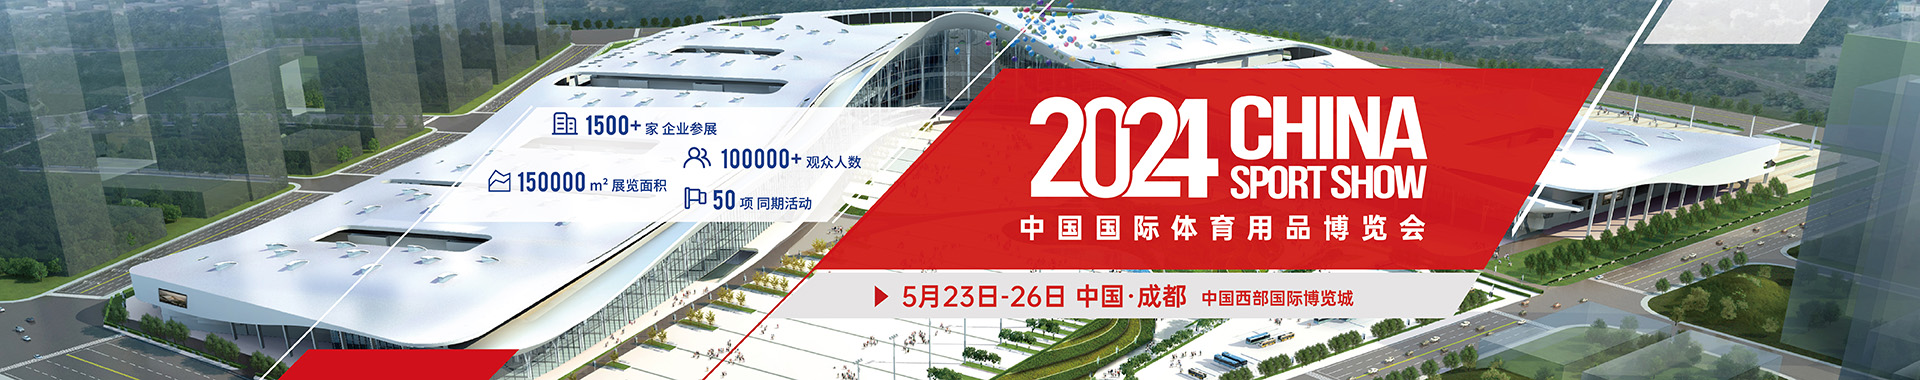 中国国际体育用品博览,成都,希科检测,16C023 